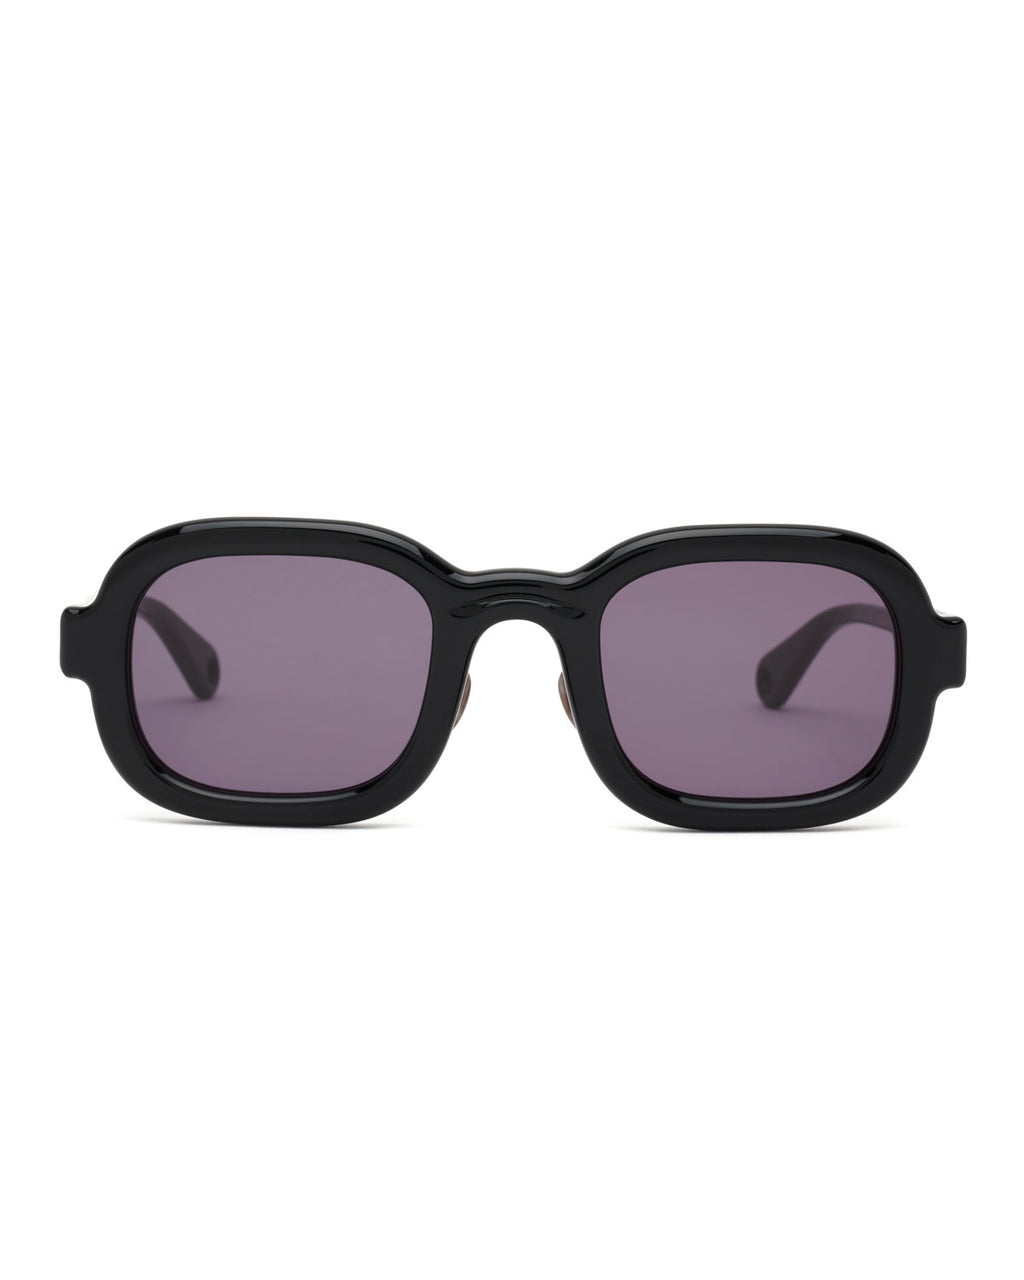 Newman Post Modern Primitive Eye Protection - Black 1